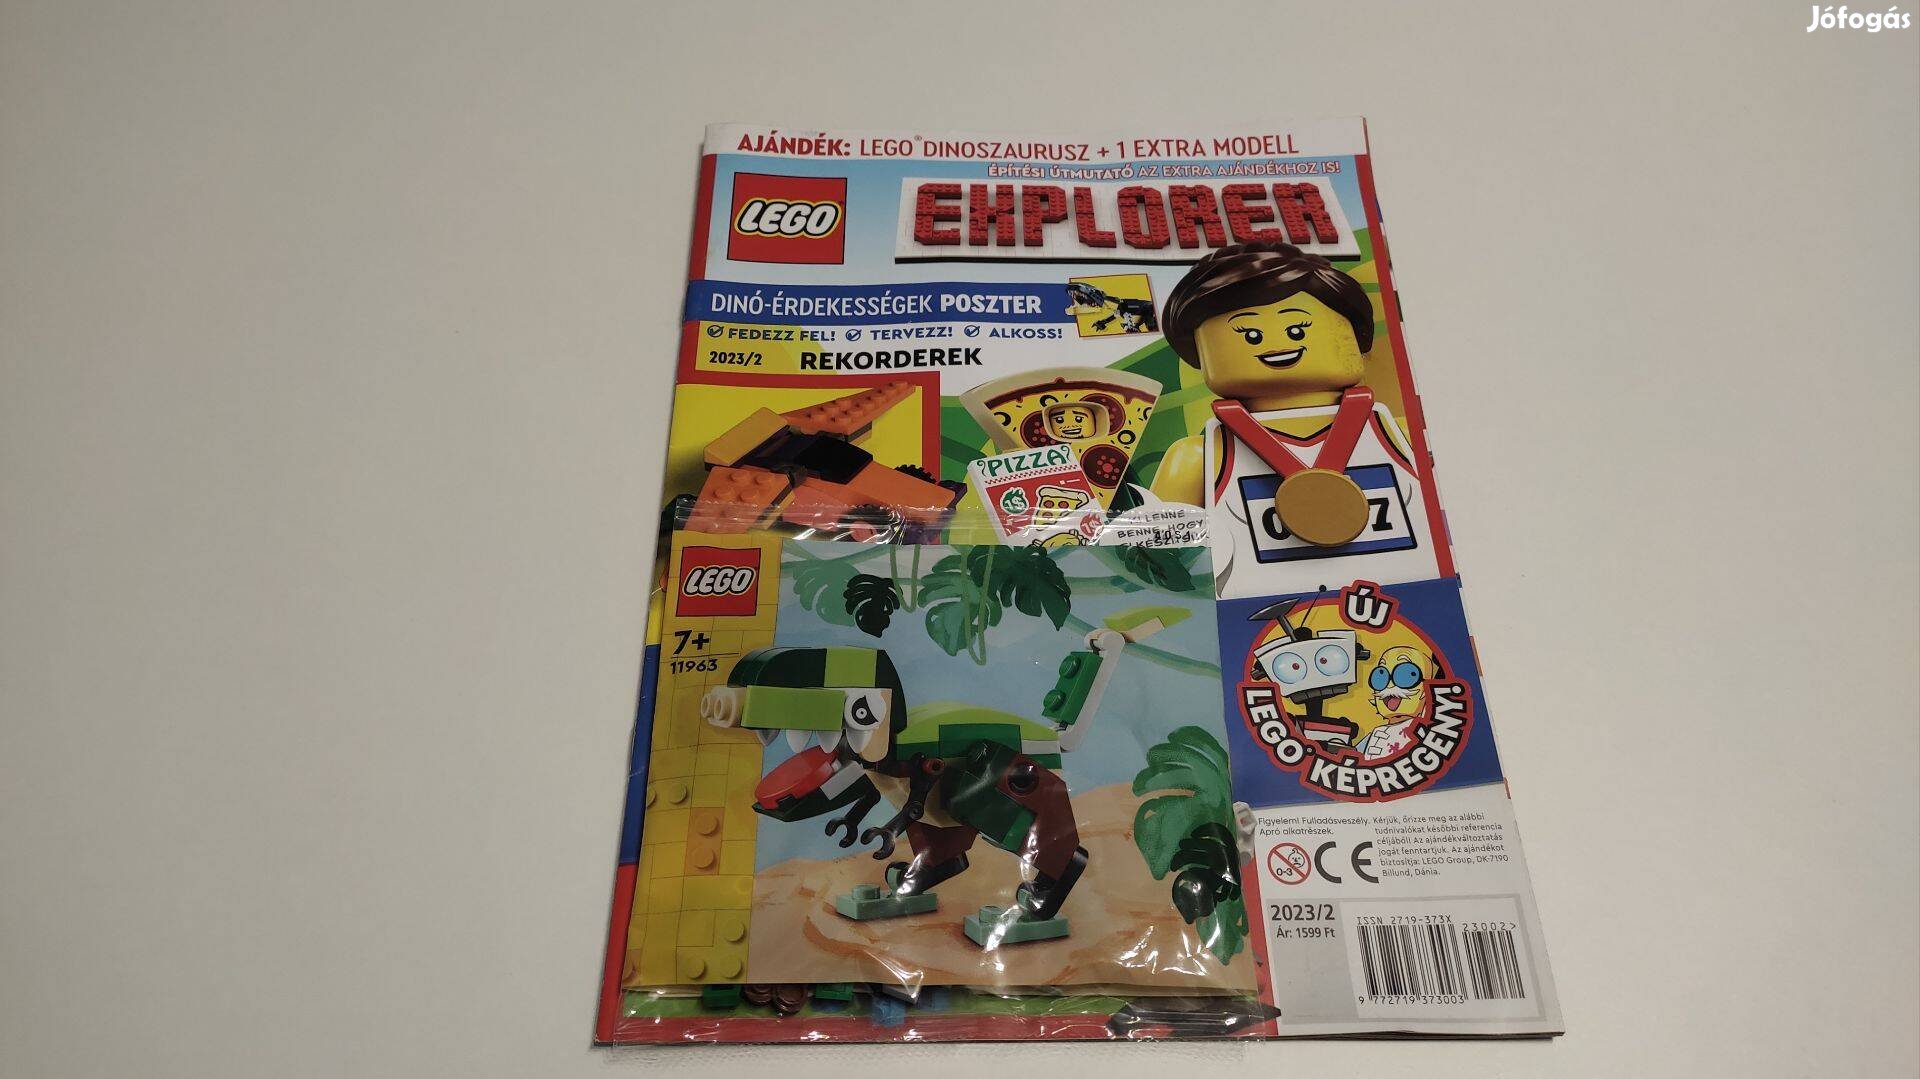 LEGO 11963 polybag dinoszaurusz + LEGO Explorer újság - új, bontatlan